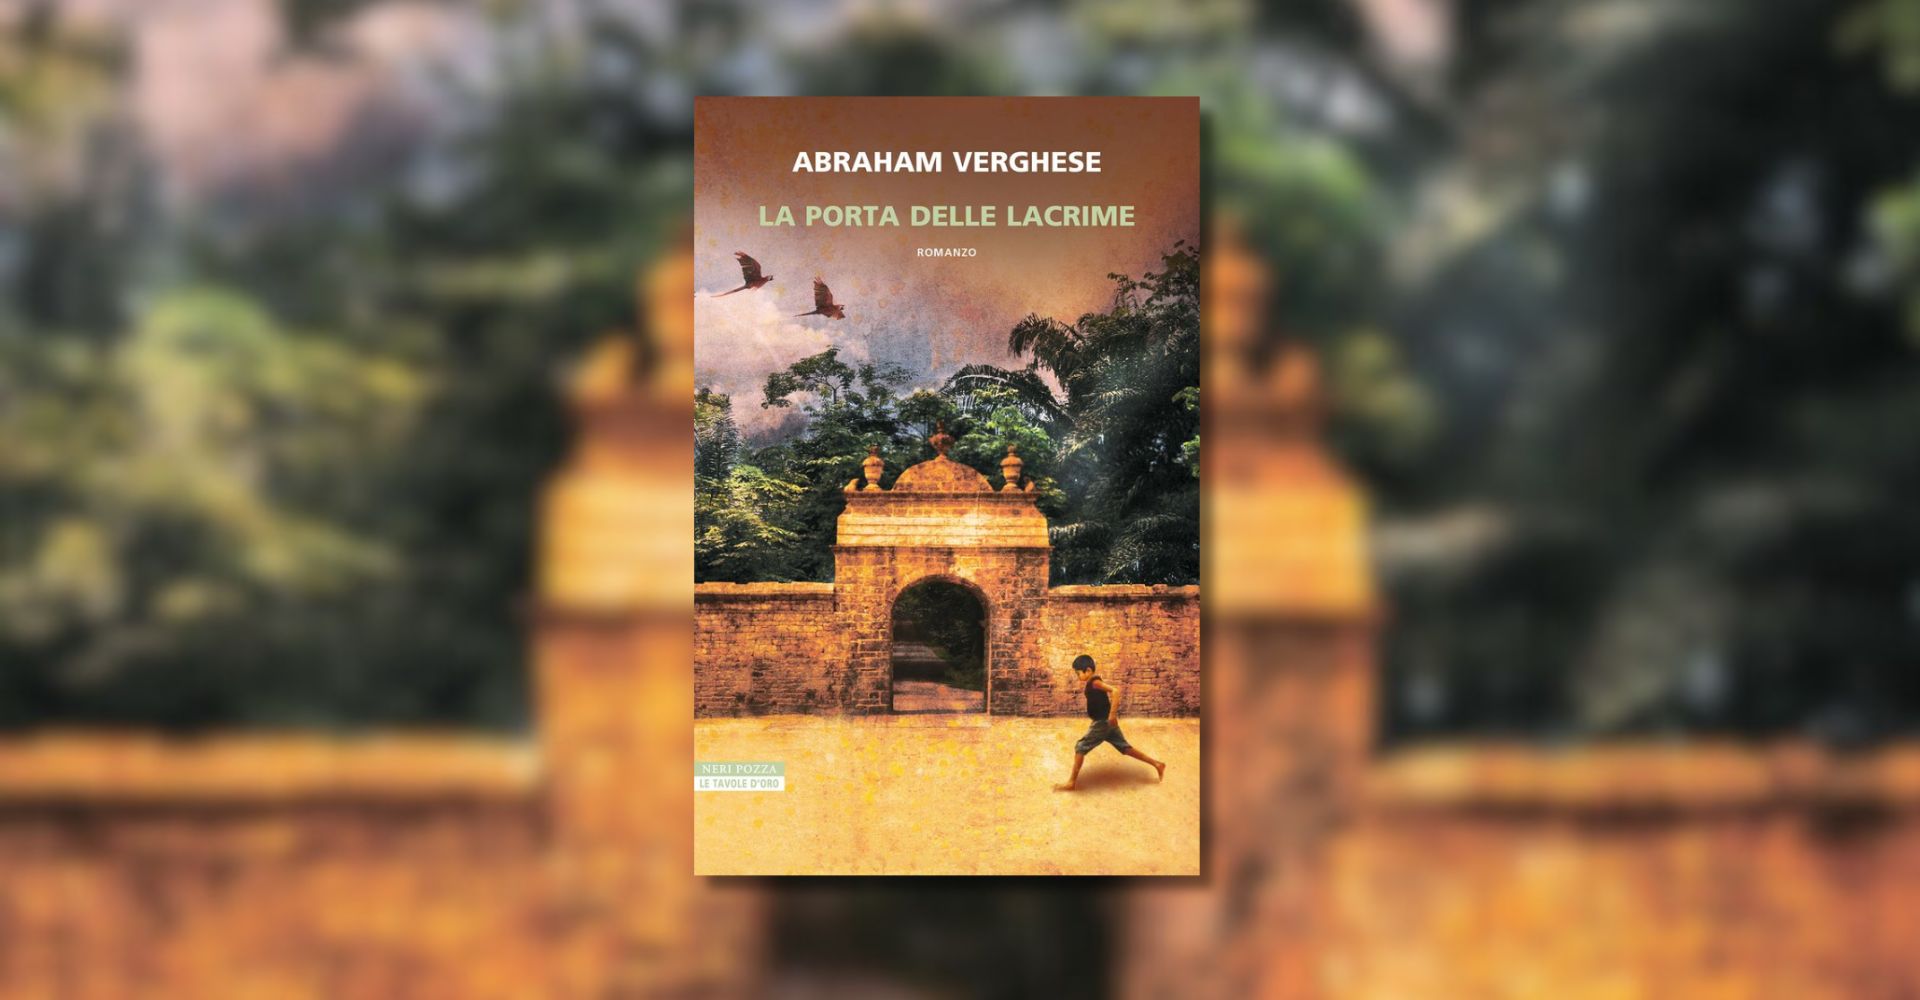 Abraham Verghese ci apre “la porta delle lacrime”, romanzo epico